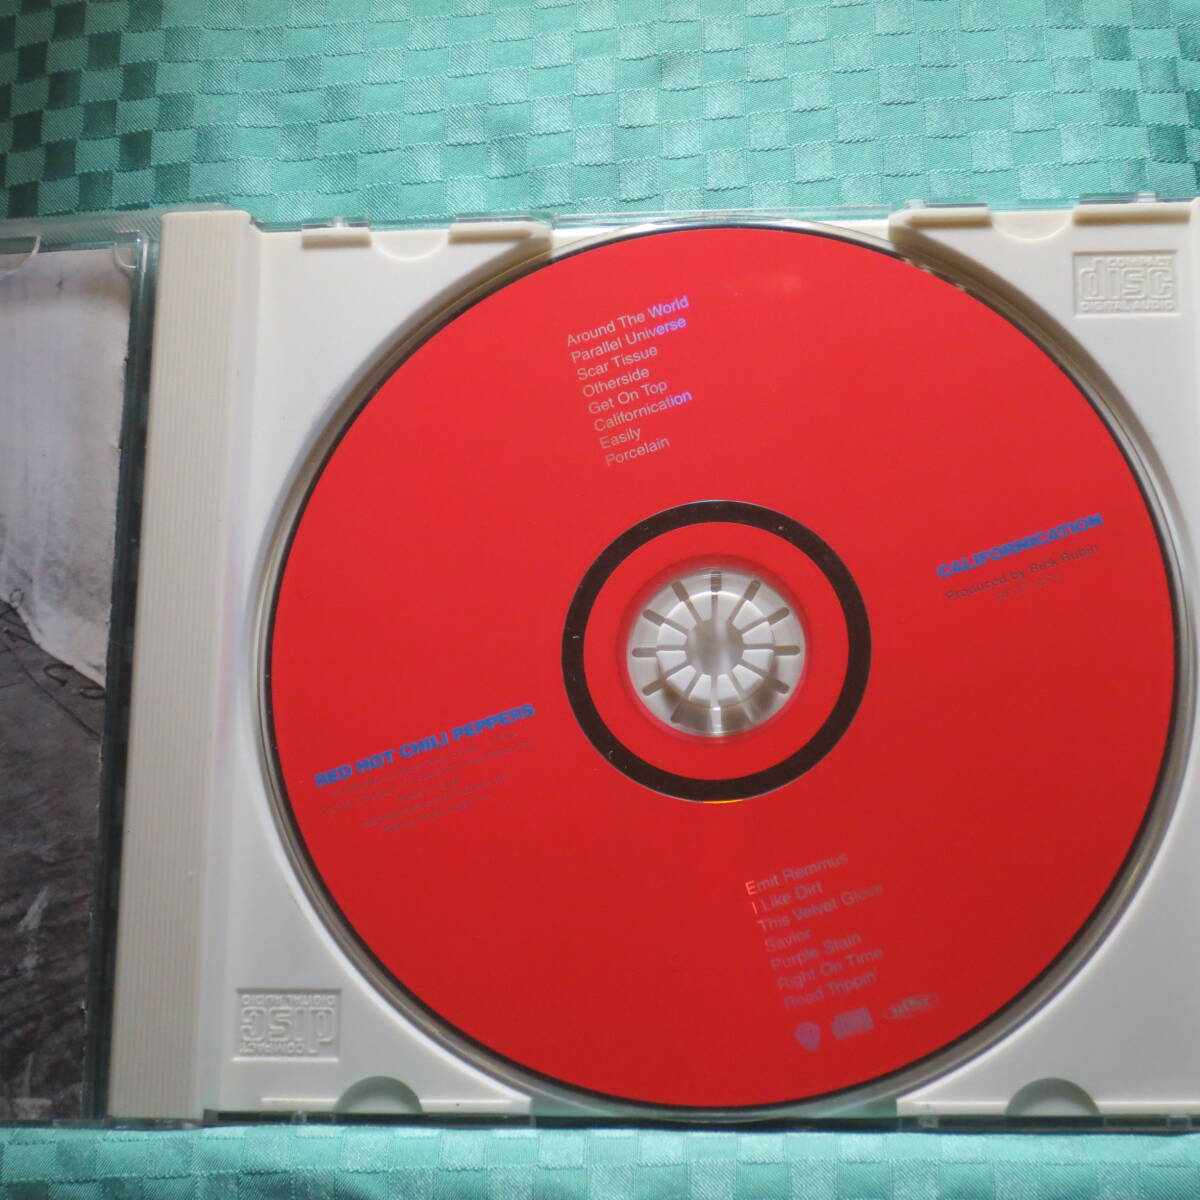 [CD] Red Hot Chili Peppers / Californicationkaliforuni Kei shon* диск прекрасный товар / записано в Японии описание,.., перевод есть 